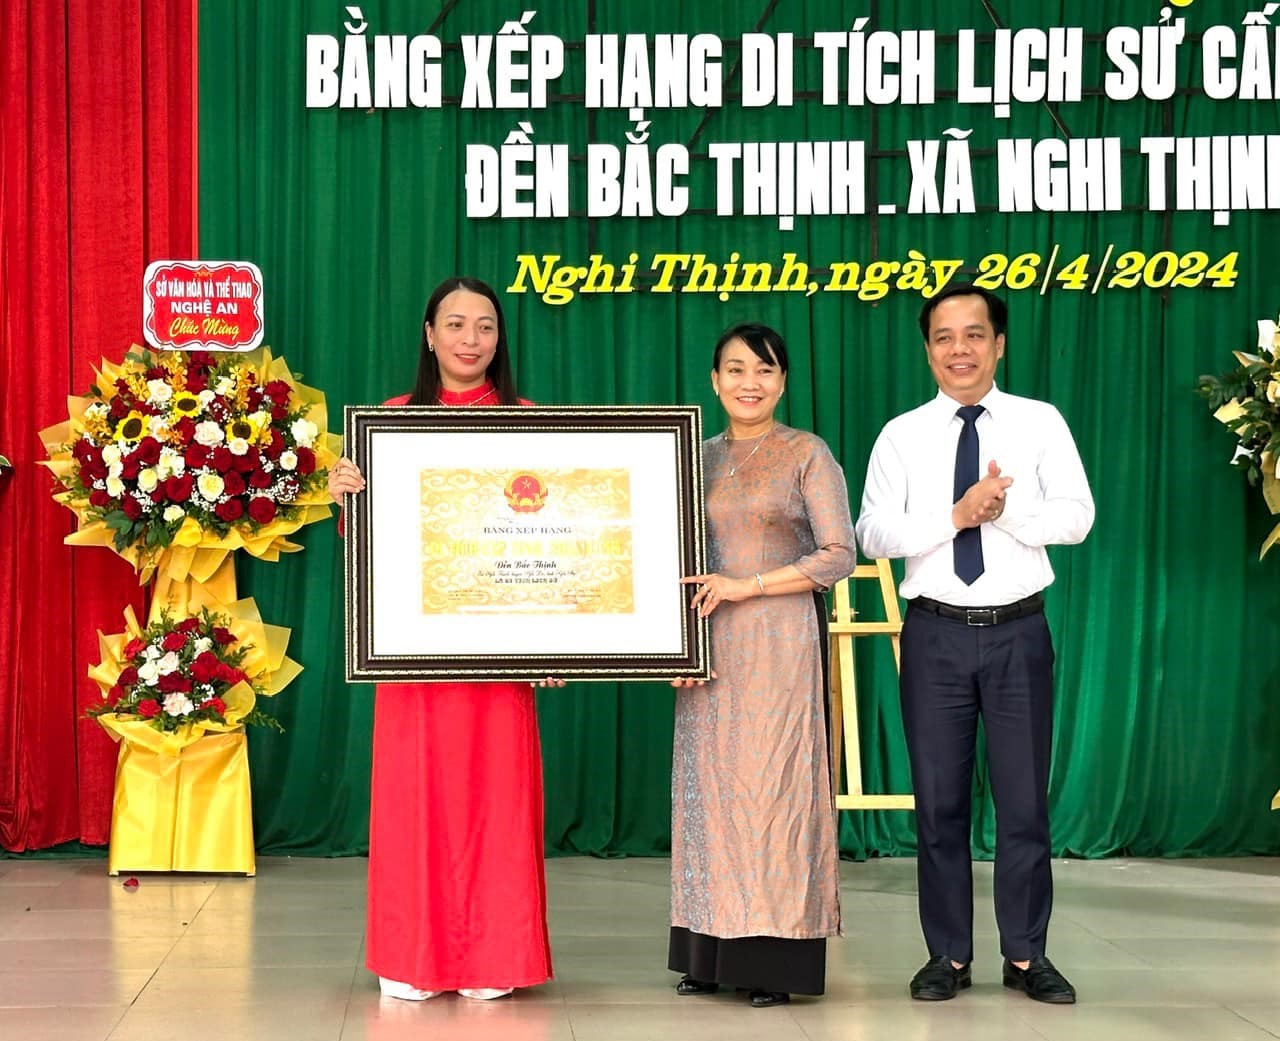 Huyện Nghi Lộc đón nhận bằng xếp hạng di tích lịch sử cấp tỉnh đền Bắc Thịnh